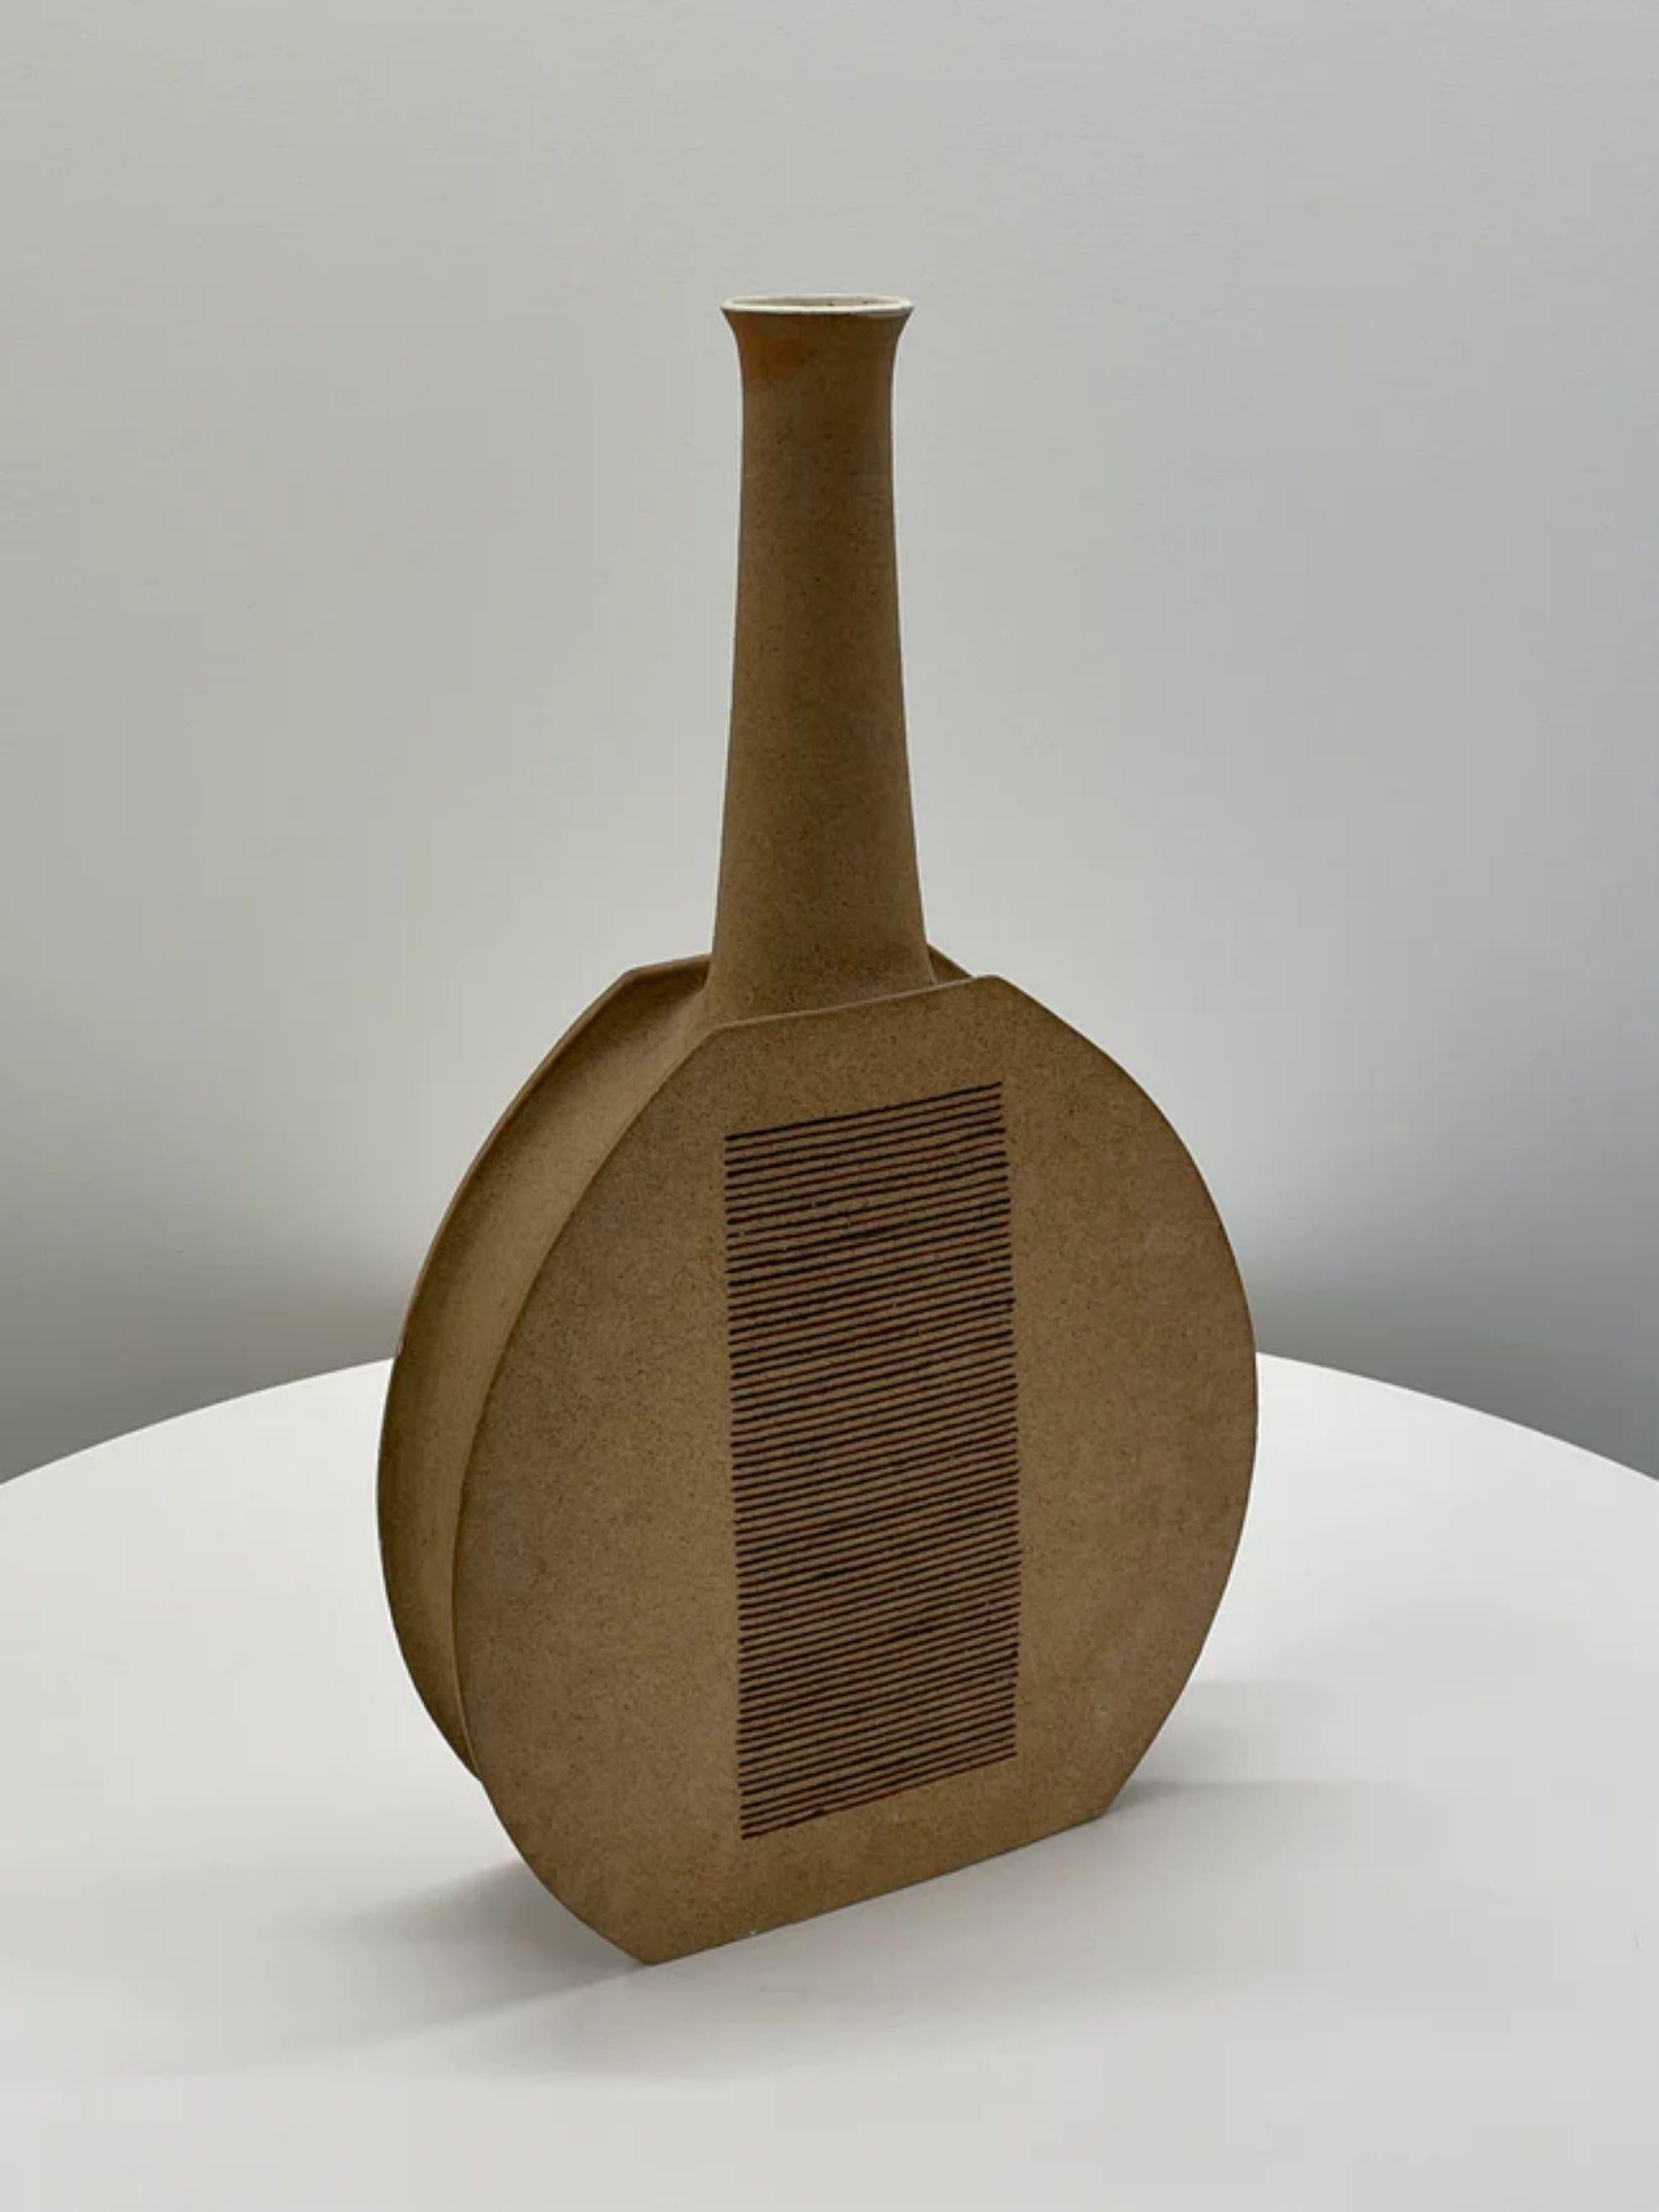 Vase monumental en céramique de Bruno Gambone, Italie, années 1970

Informations supplémentaires :
MATERIAL : Céramique émaillée
Dimensions : 27